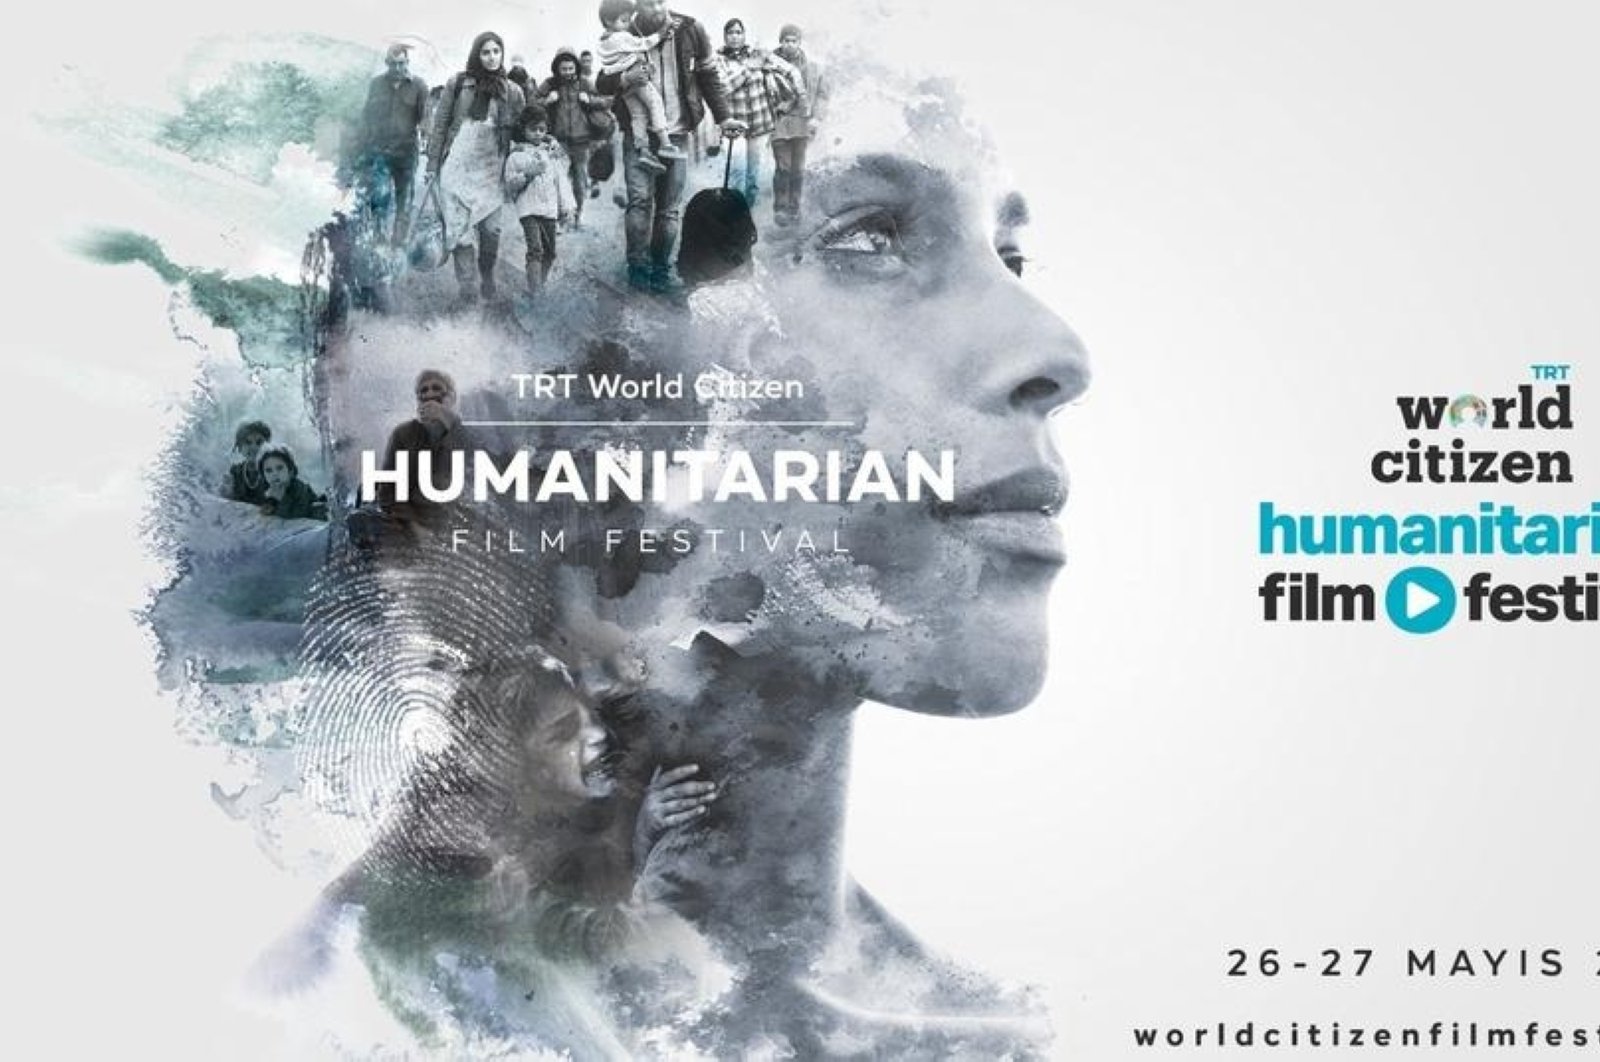 Festival film baru mengeksplorasi isu-isu kemanusiaan global di Istanbul